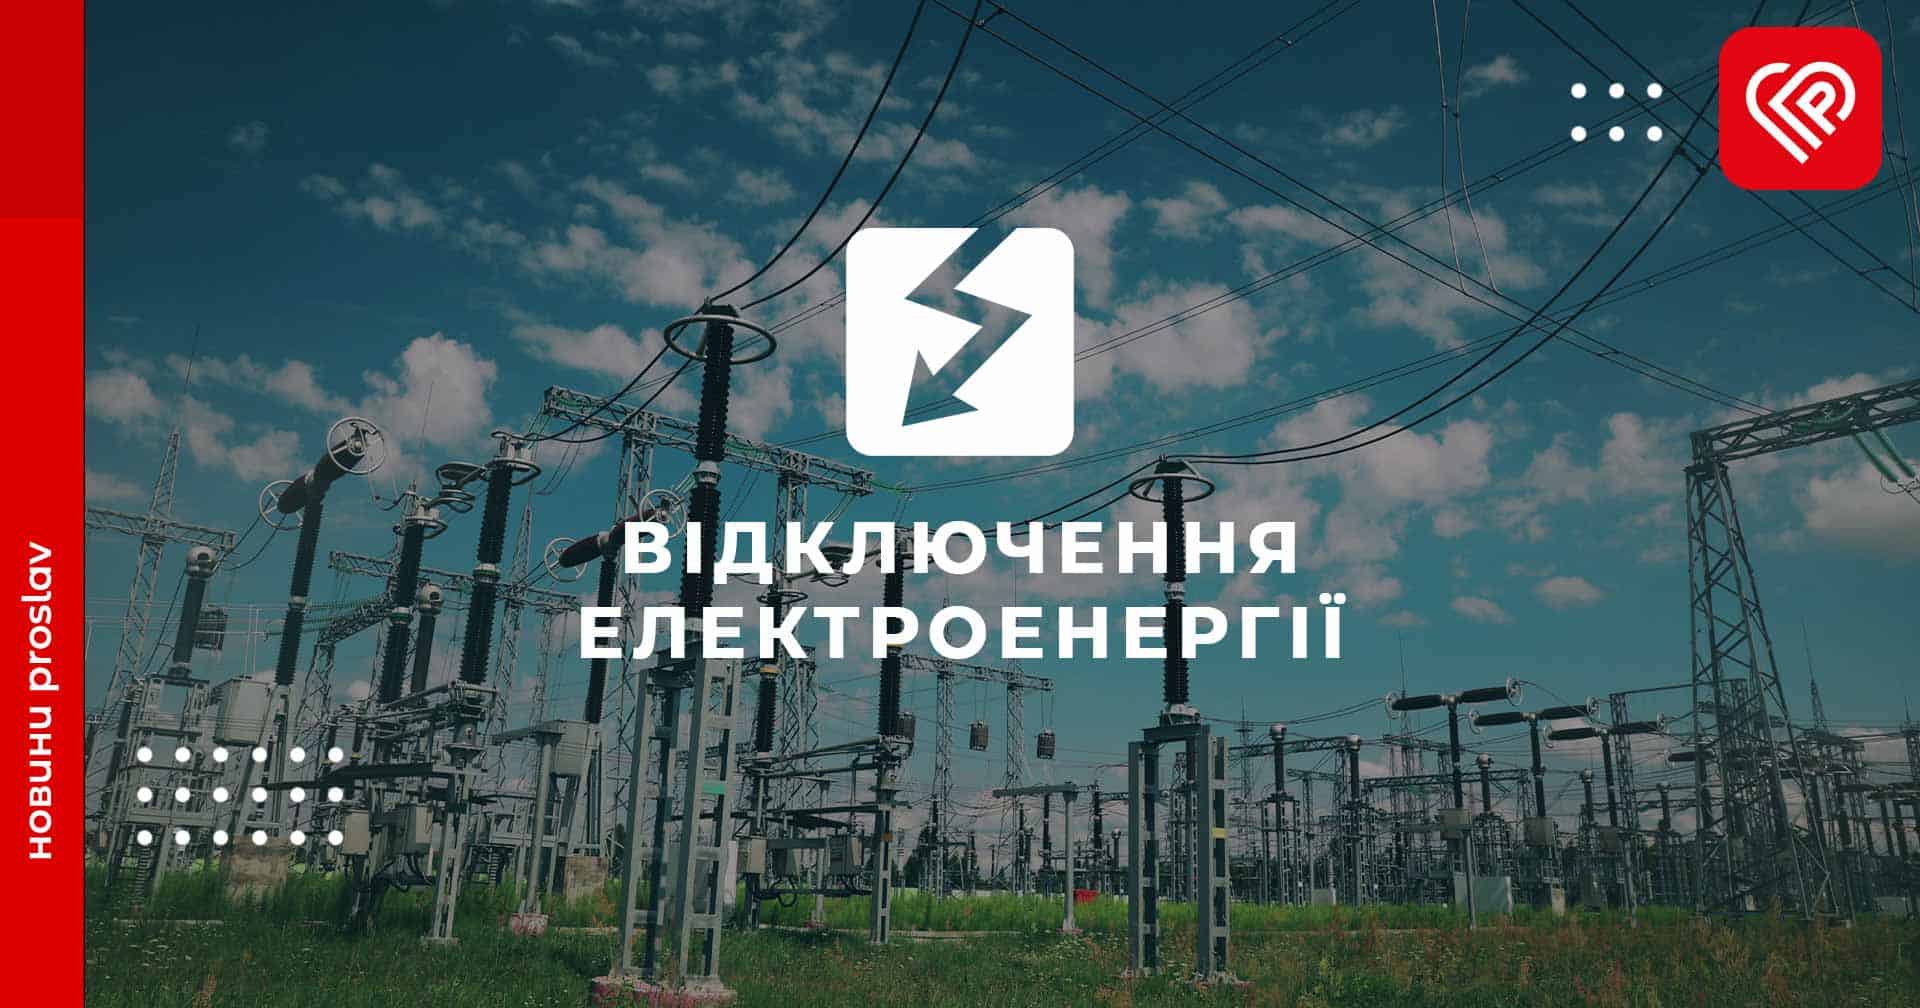 6 жовтня у деяких населених пунктах Переяславщини планово вимикатимуть електроенергію